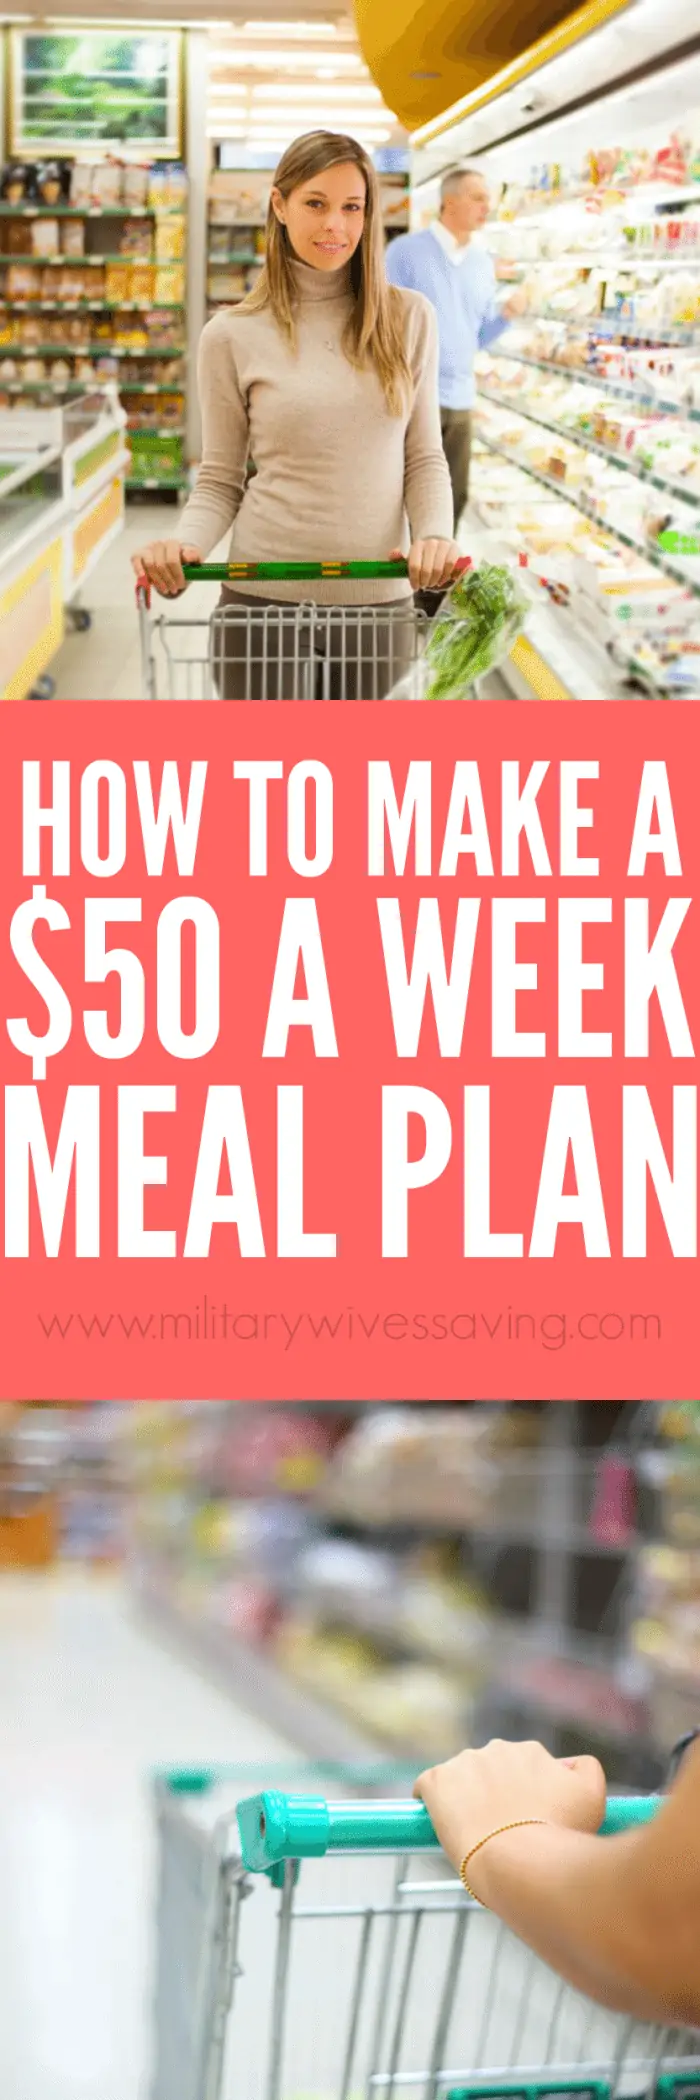 meal-plan-50